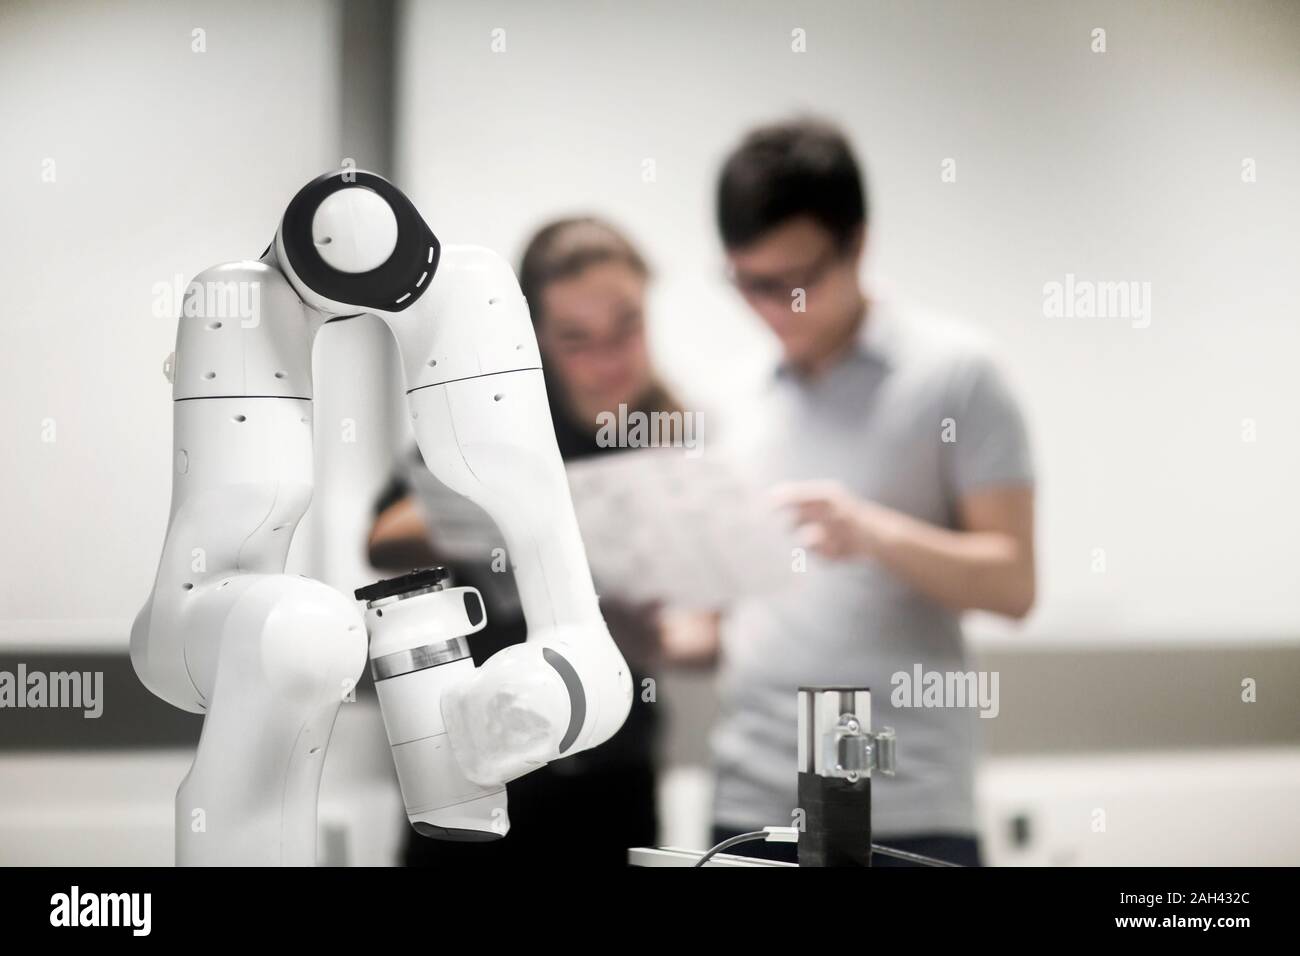 Degli studenti che studiano robotica presso un istituto universitario Foto Stock